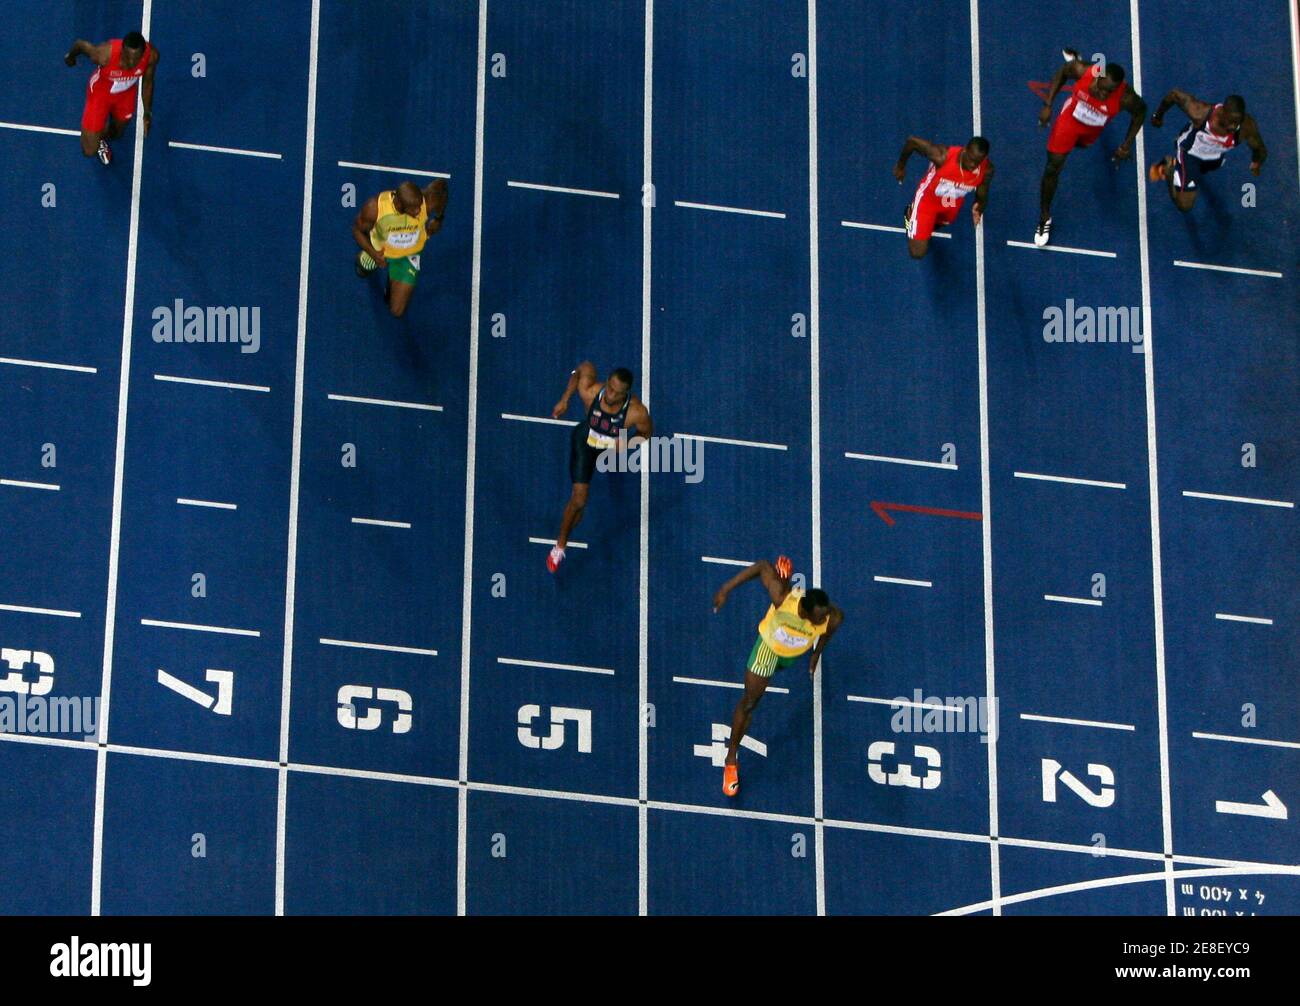 Usain Bolt de la Jamaïque traverse la ligne d'arrivée devant Tyson gay des États-Unis et Asafa Powell (R à L, voie 4 à 6) de la Jamaïque dans la finale masculine de 100 mètres pendant les championnats du monde d'athlétisme au stade olympique de Berlin, le 16 août 2009. REUTERS/STAFF (ALLEMAGNE SPORT ATHLÉTISME) Banque D'Images